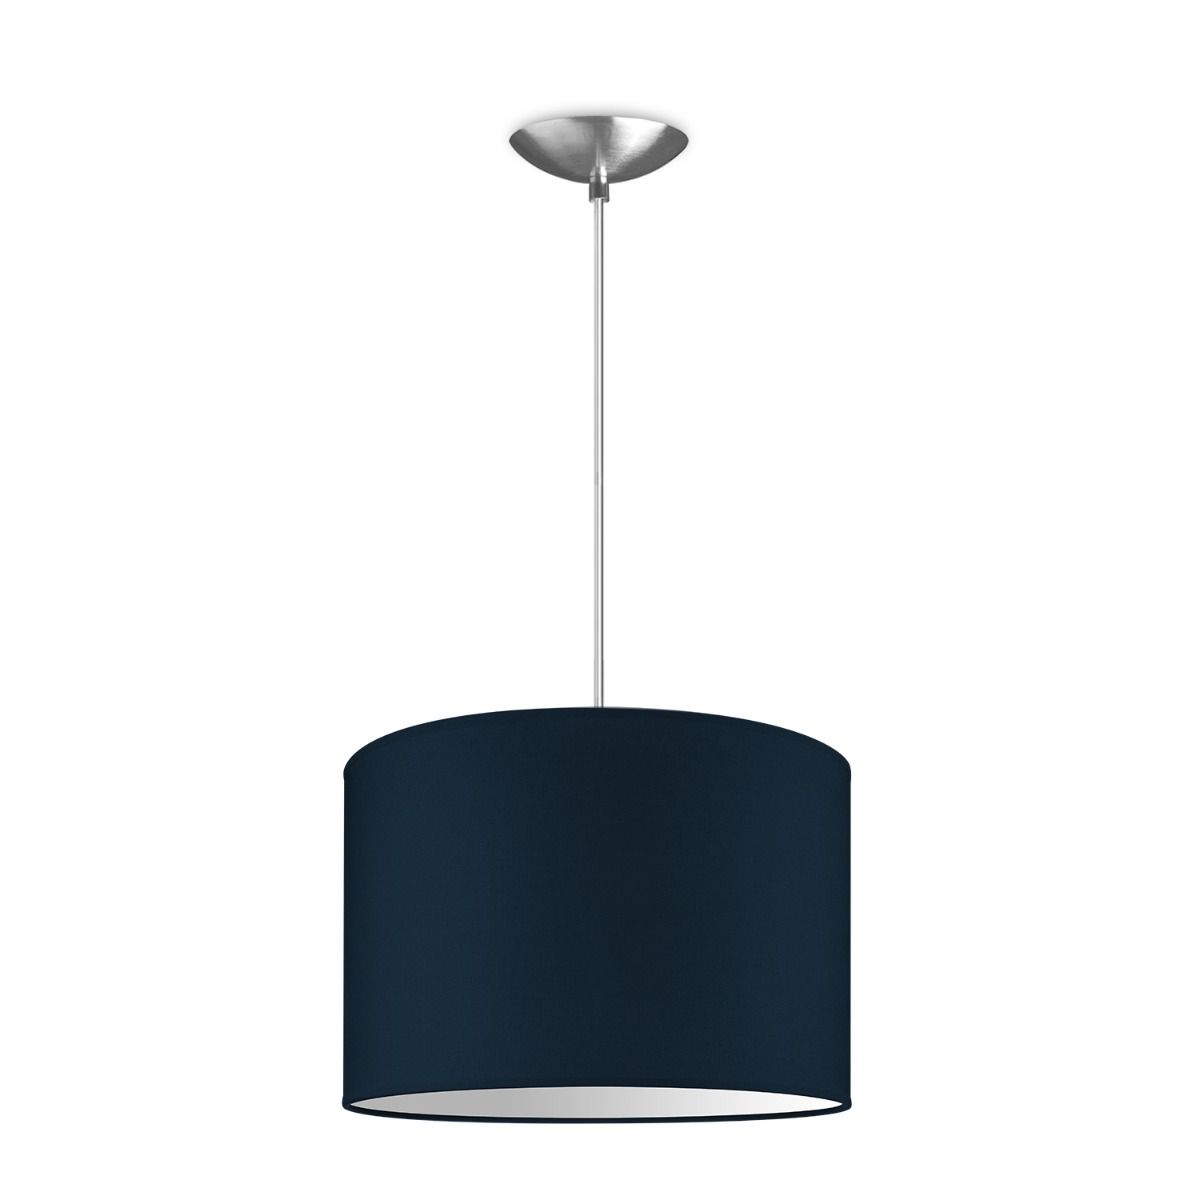 Light depot - hanglamp basic bling Ø 30 cm - blauw - Outlet